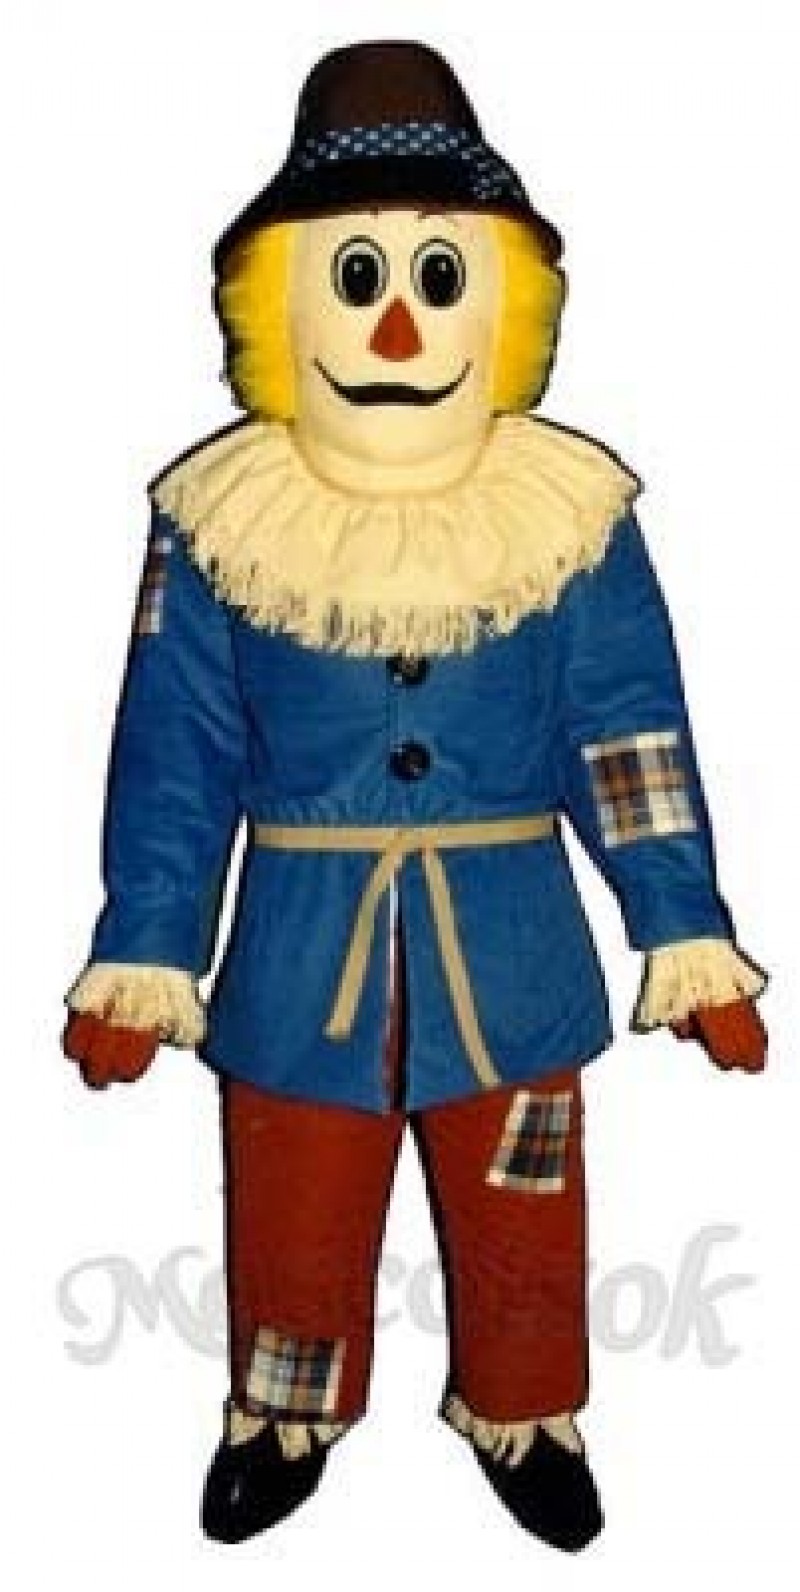 Scarecrow Mascot Costume